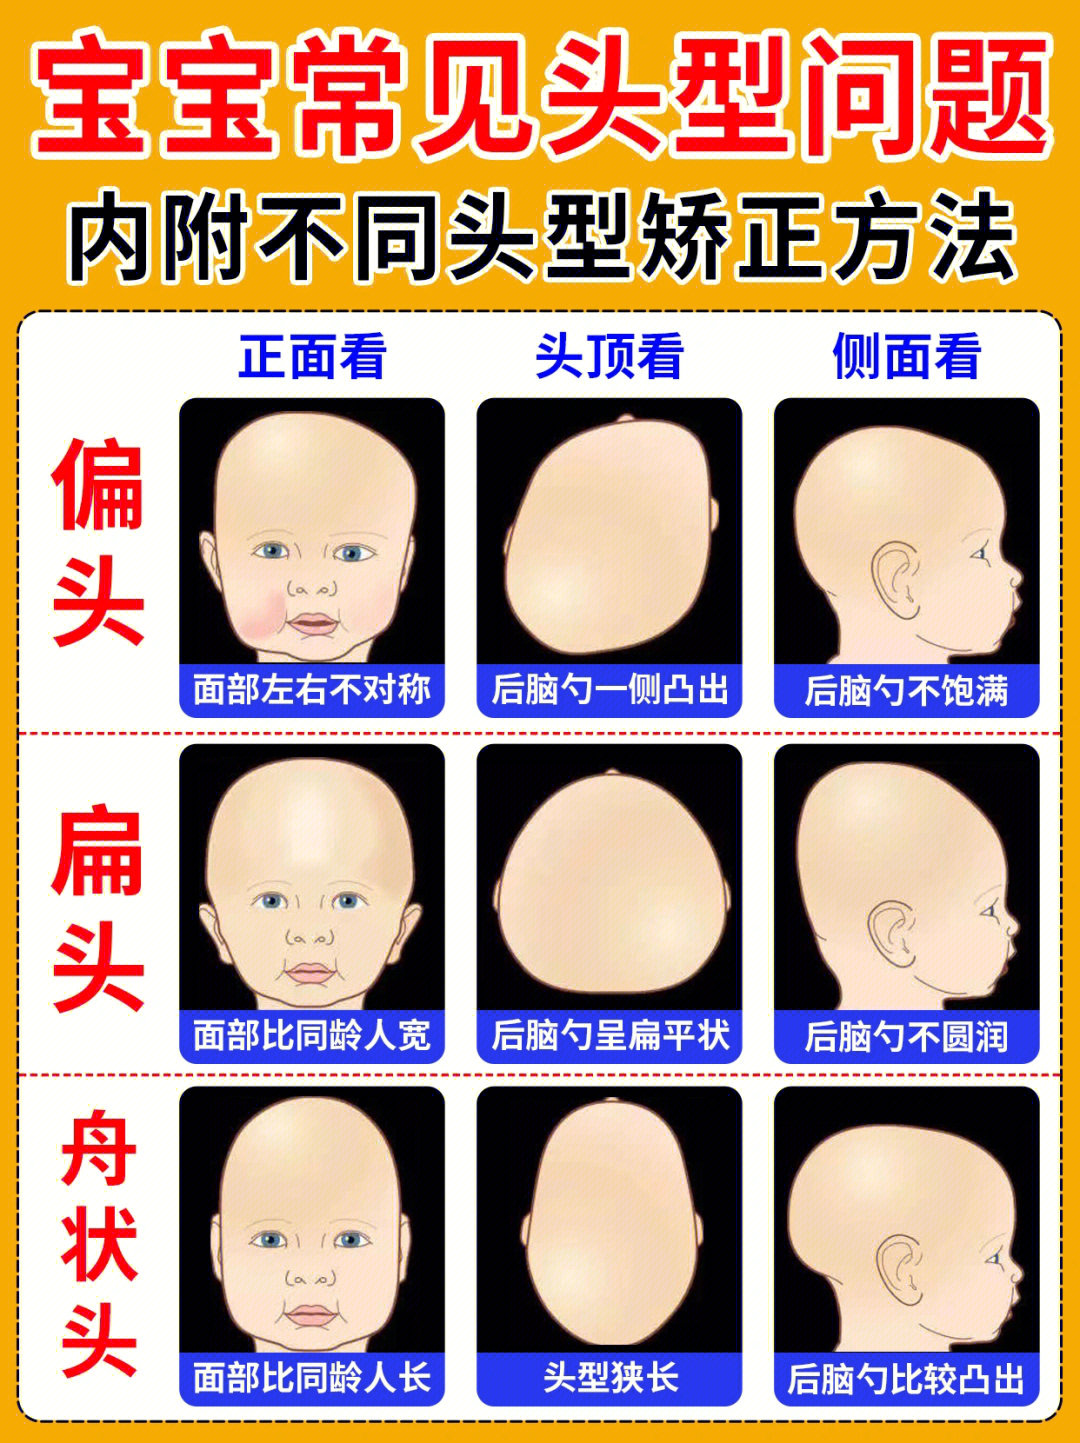 如何判断宝宝头型?婴儿头型到底怎么睡?不同头型如何矫正?